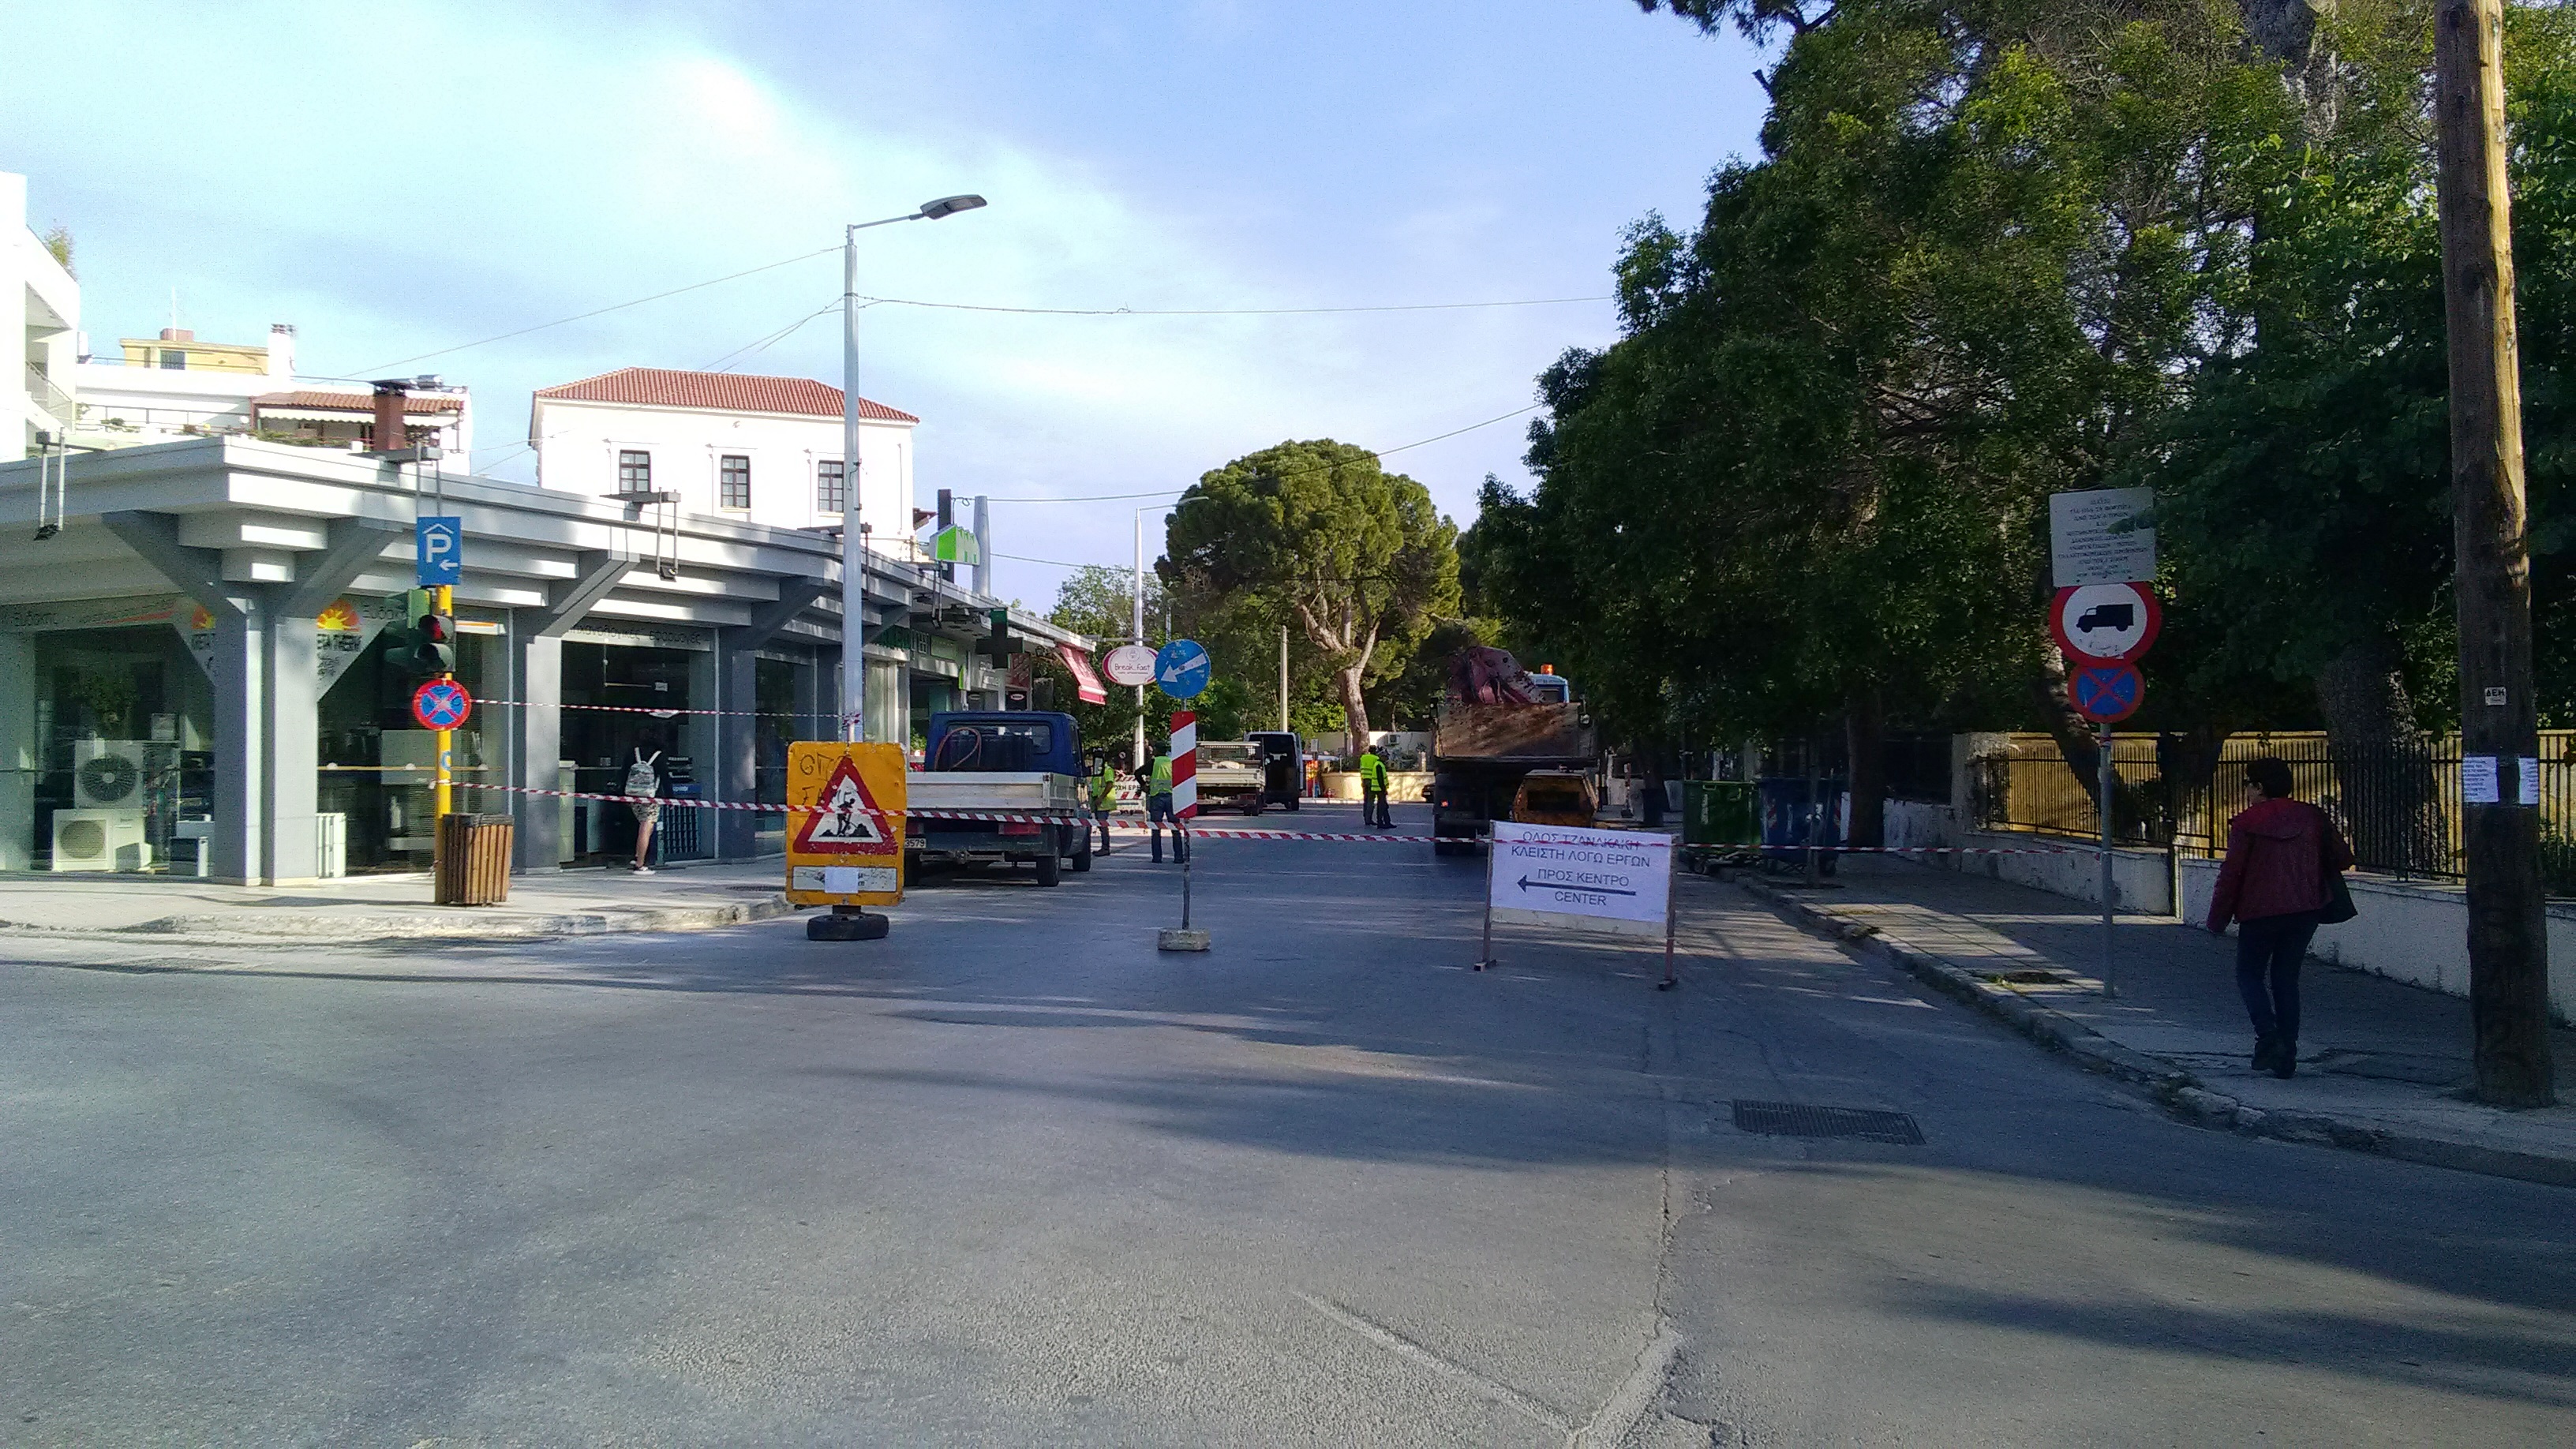 Έκλεισε η οδός Τζανακάκη στο κέντρο της πόλης των Χανίων (φωτο)